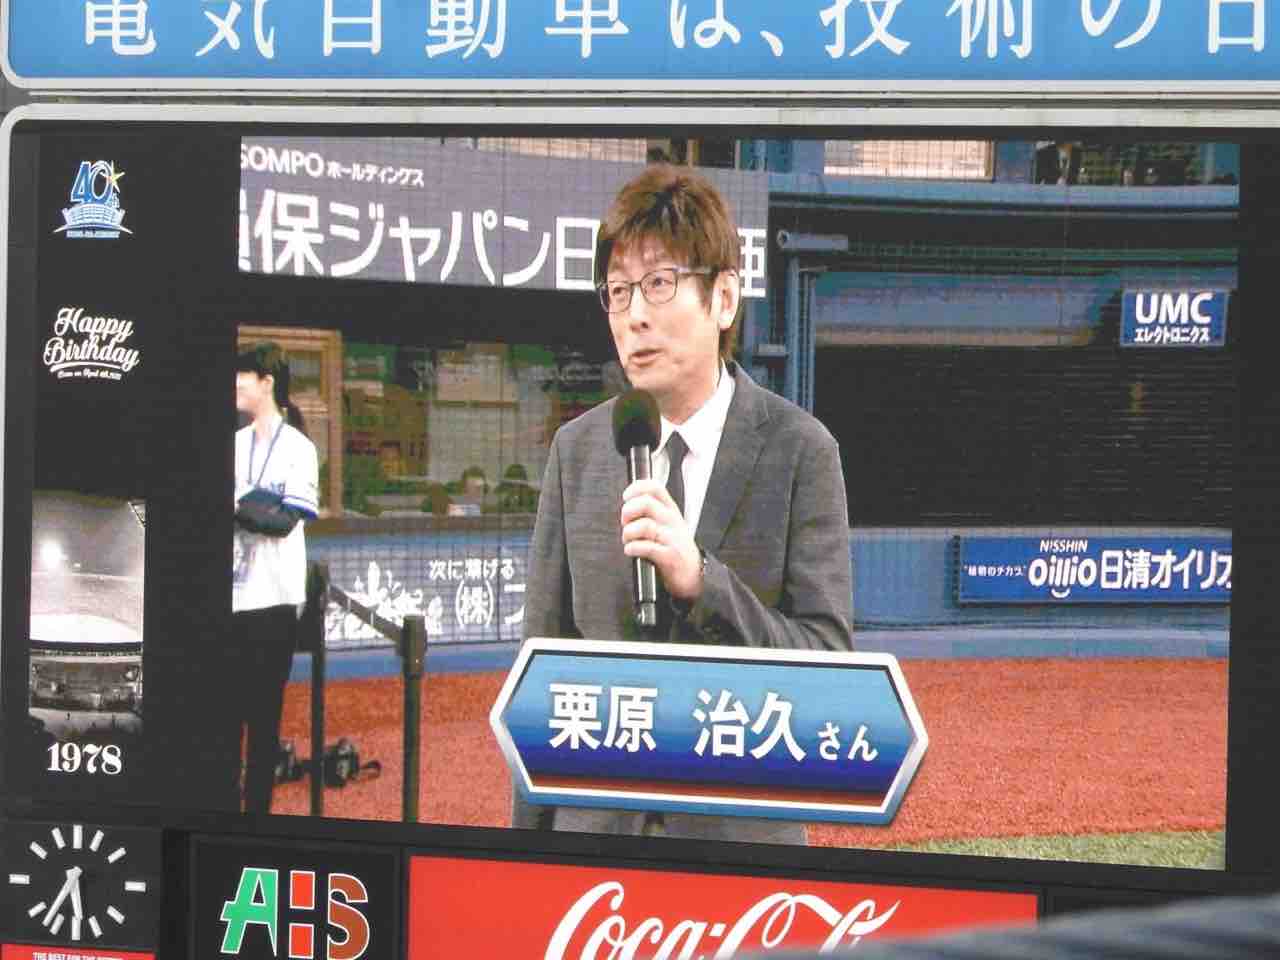 18年4月4日 横浜dena Vs 阪神 横浜スタジアム 観戦日誌という名の独り言